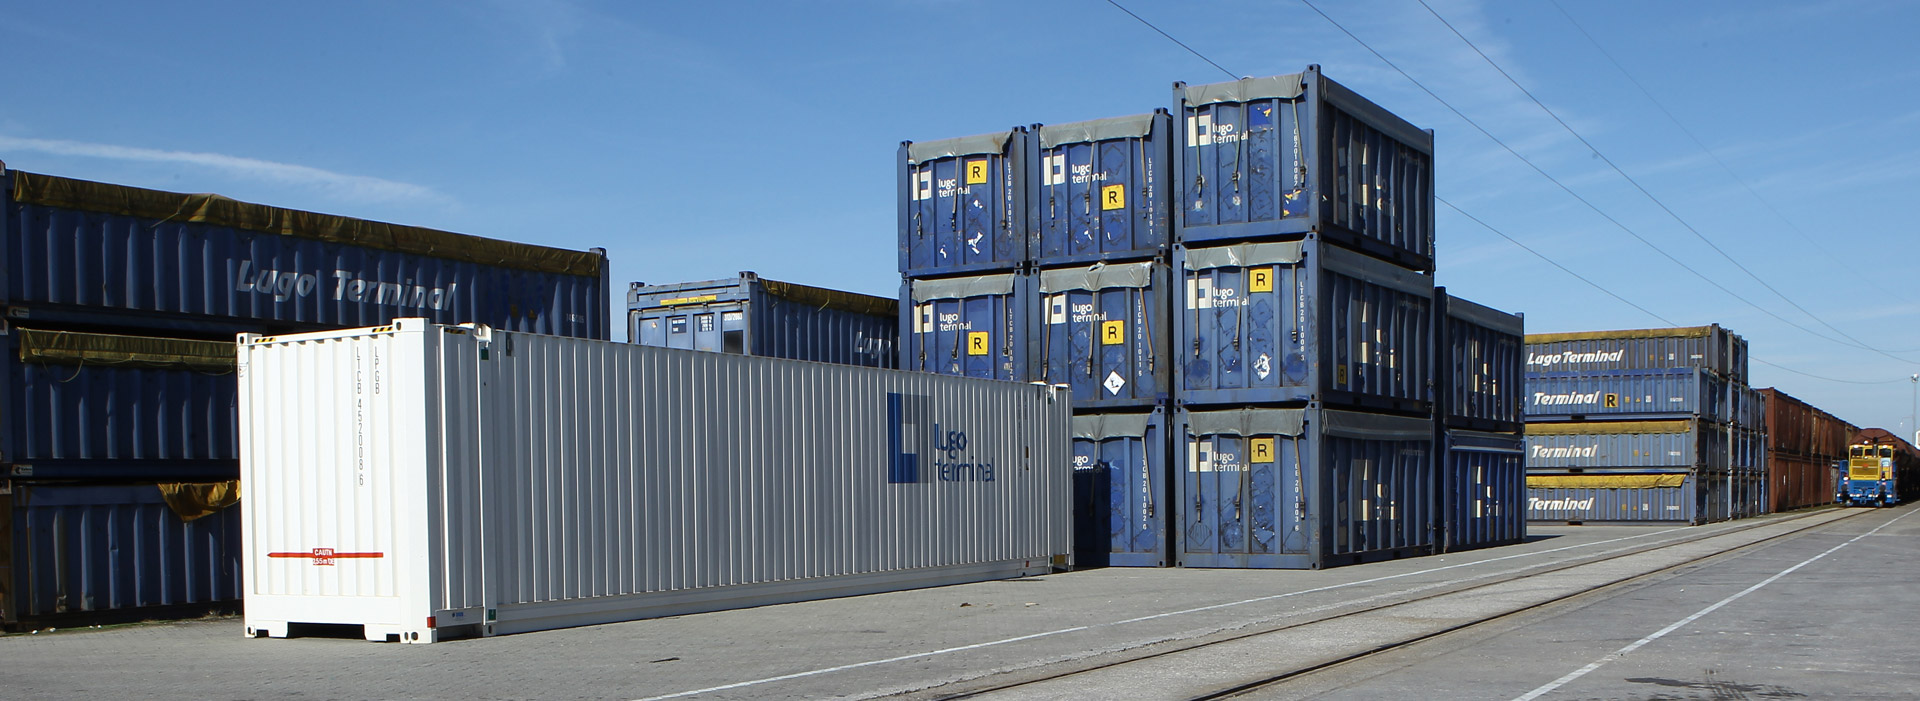 Noleggio containers